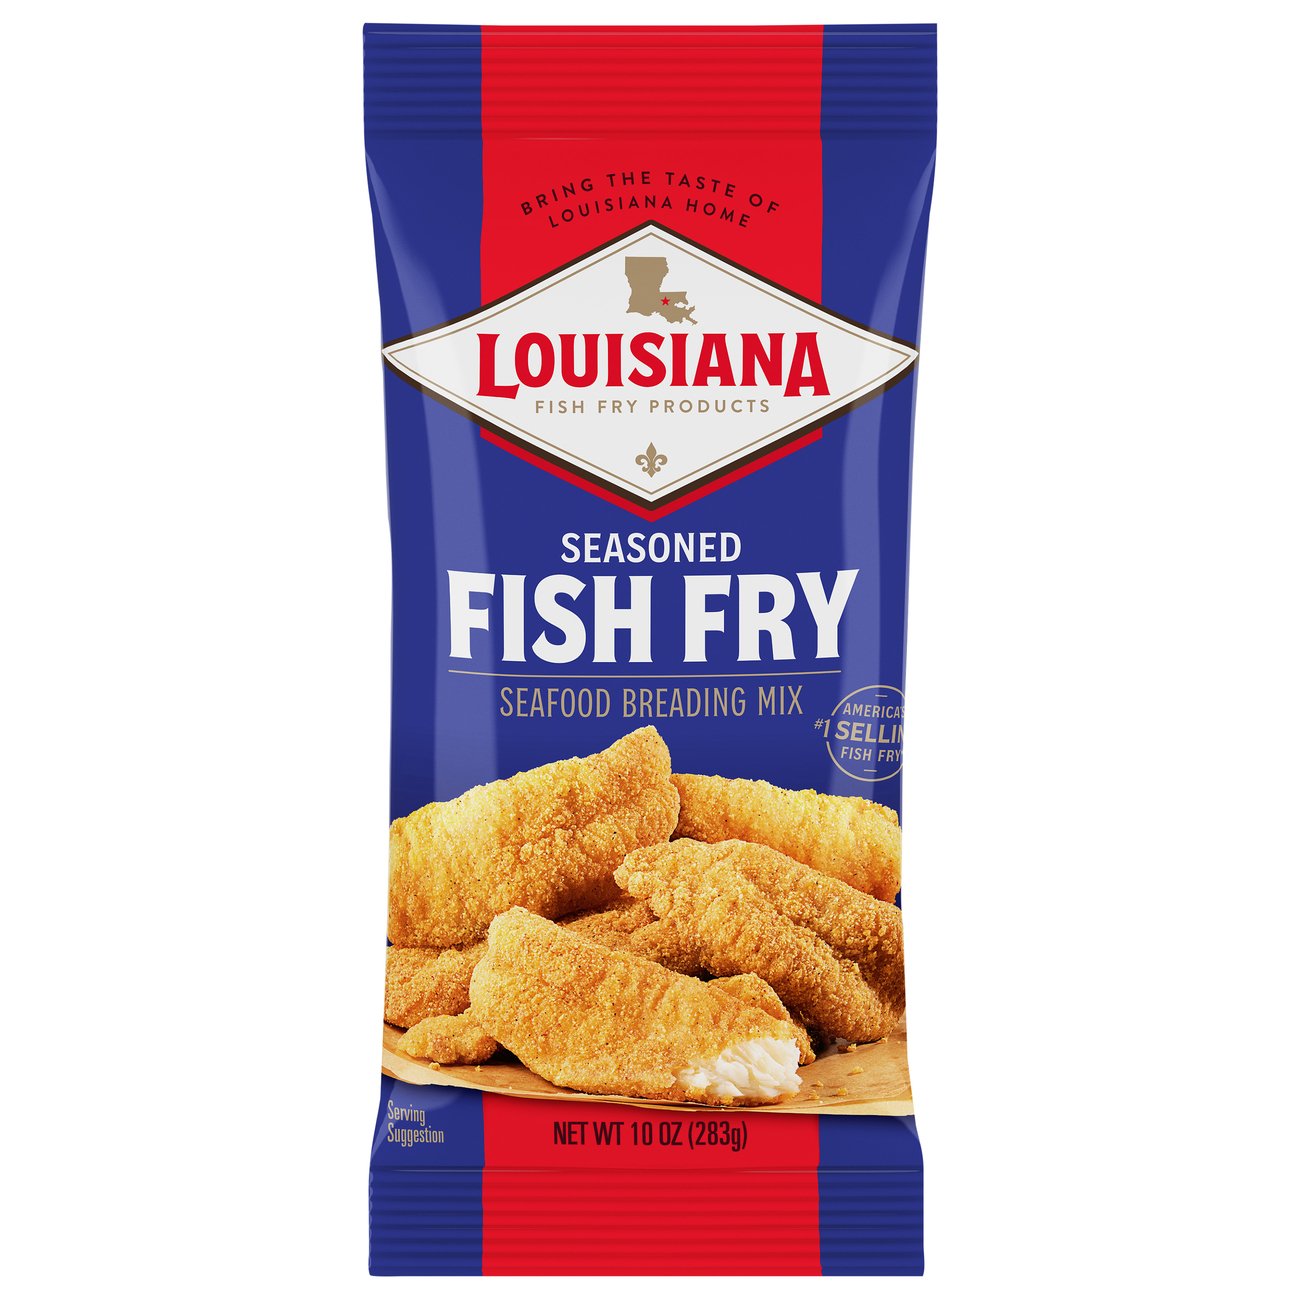  Louisiana Seasoned Crispy CHICKEN FRY Batter 9oz (Pack of 3) :  Gourmet Seasoned Coatings : Grocery & Gourmet Food